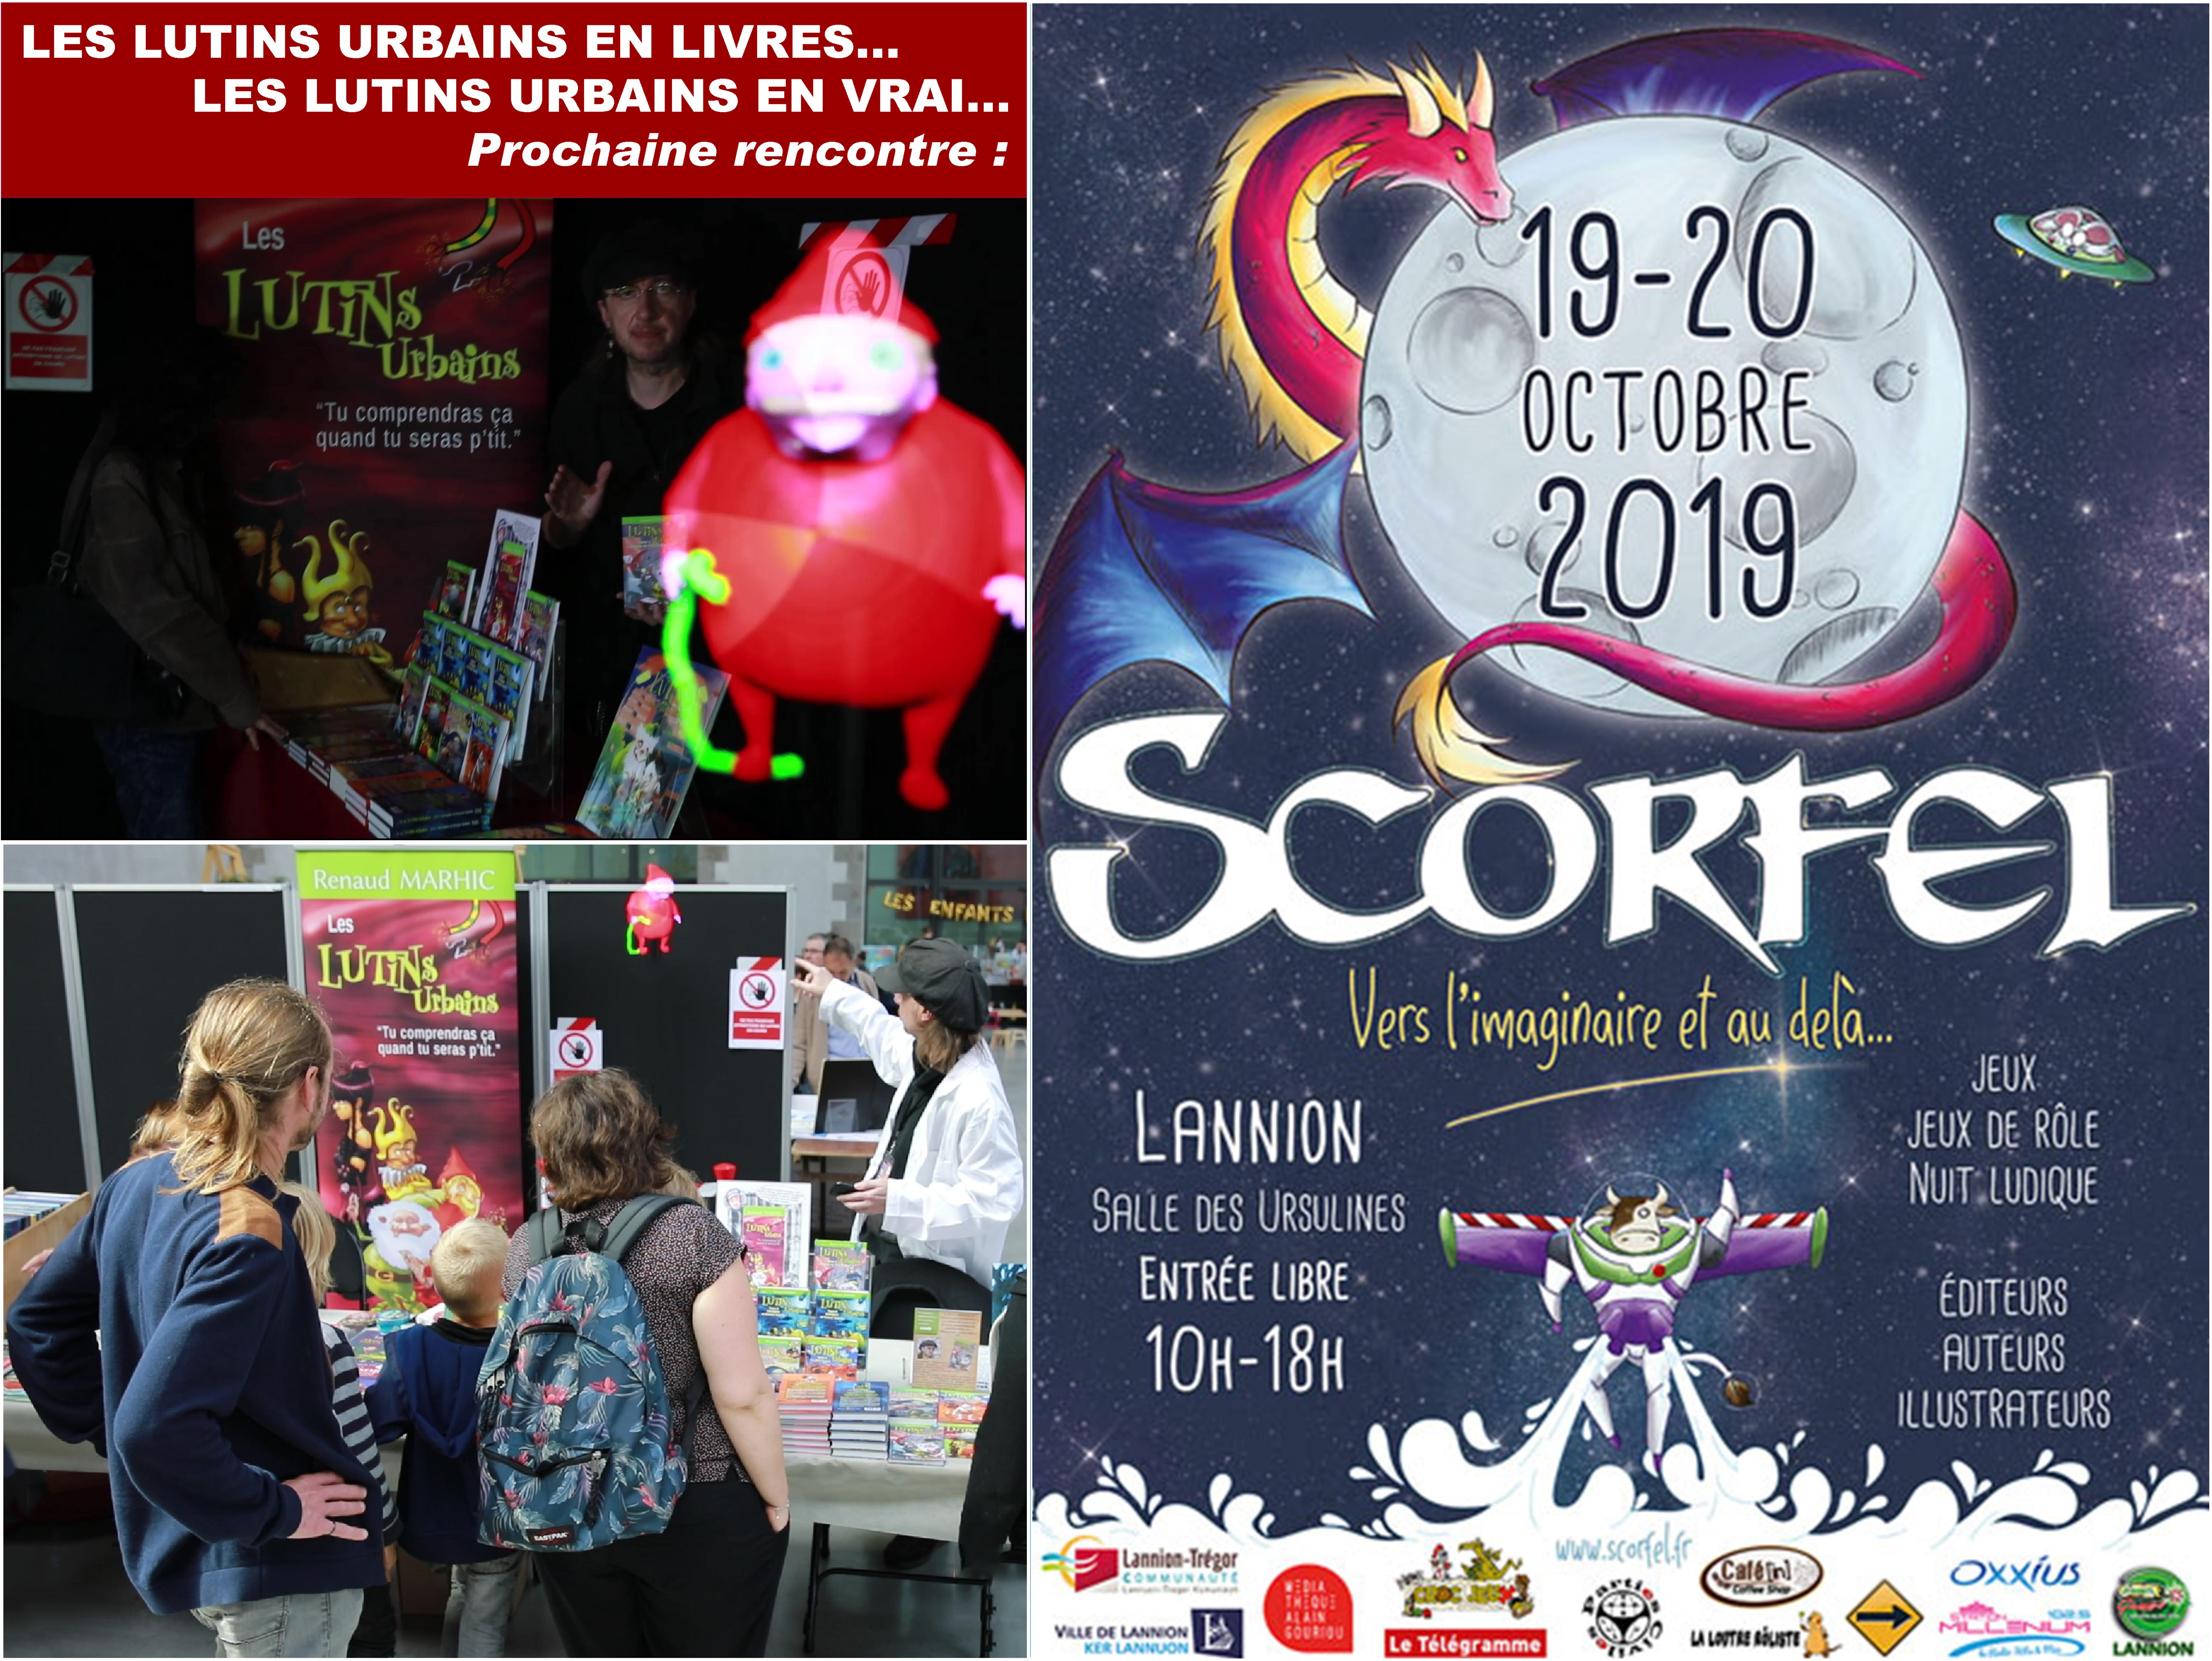 Les Lutins Urbains au Festival Scorfel 2019